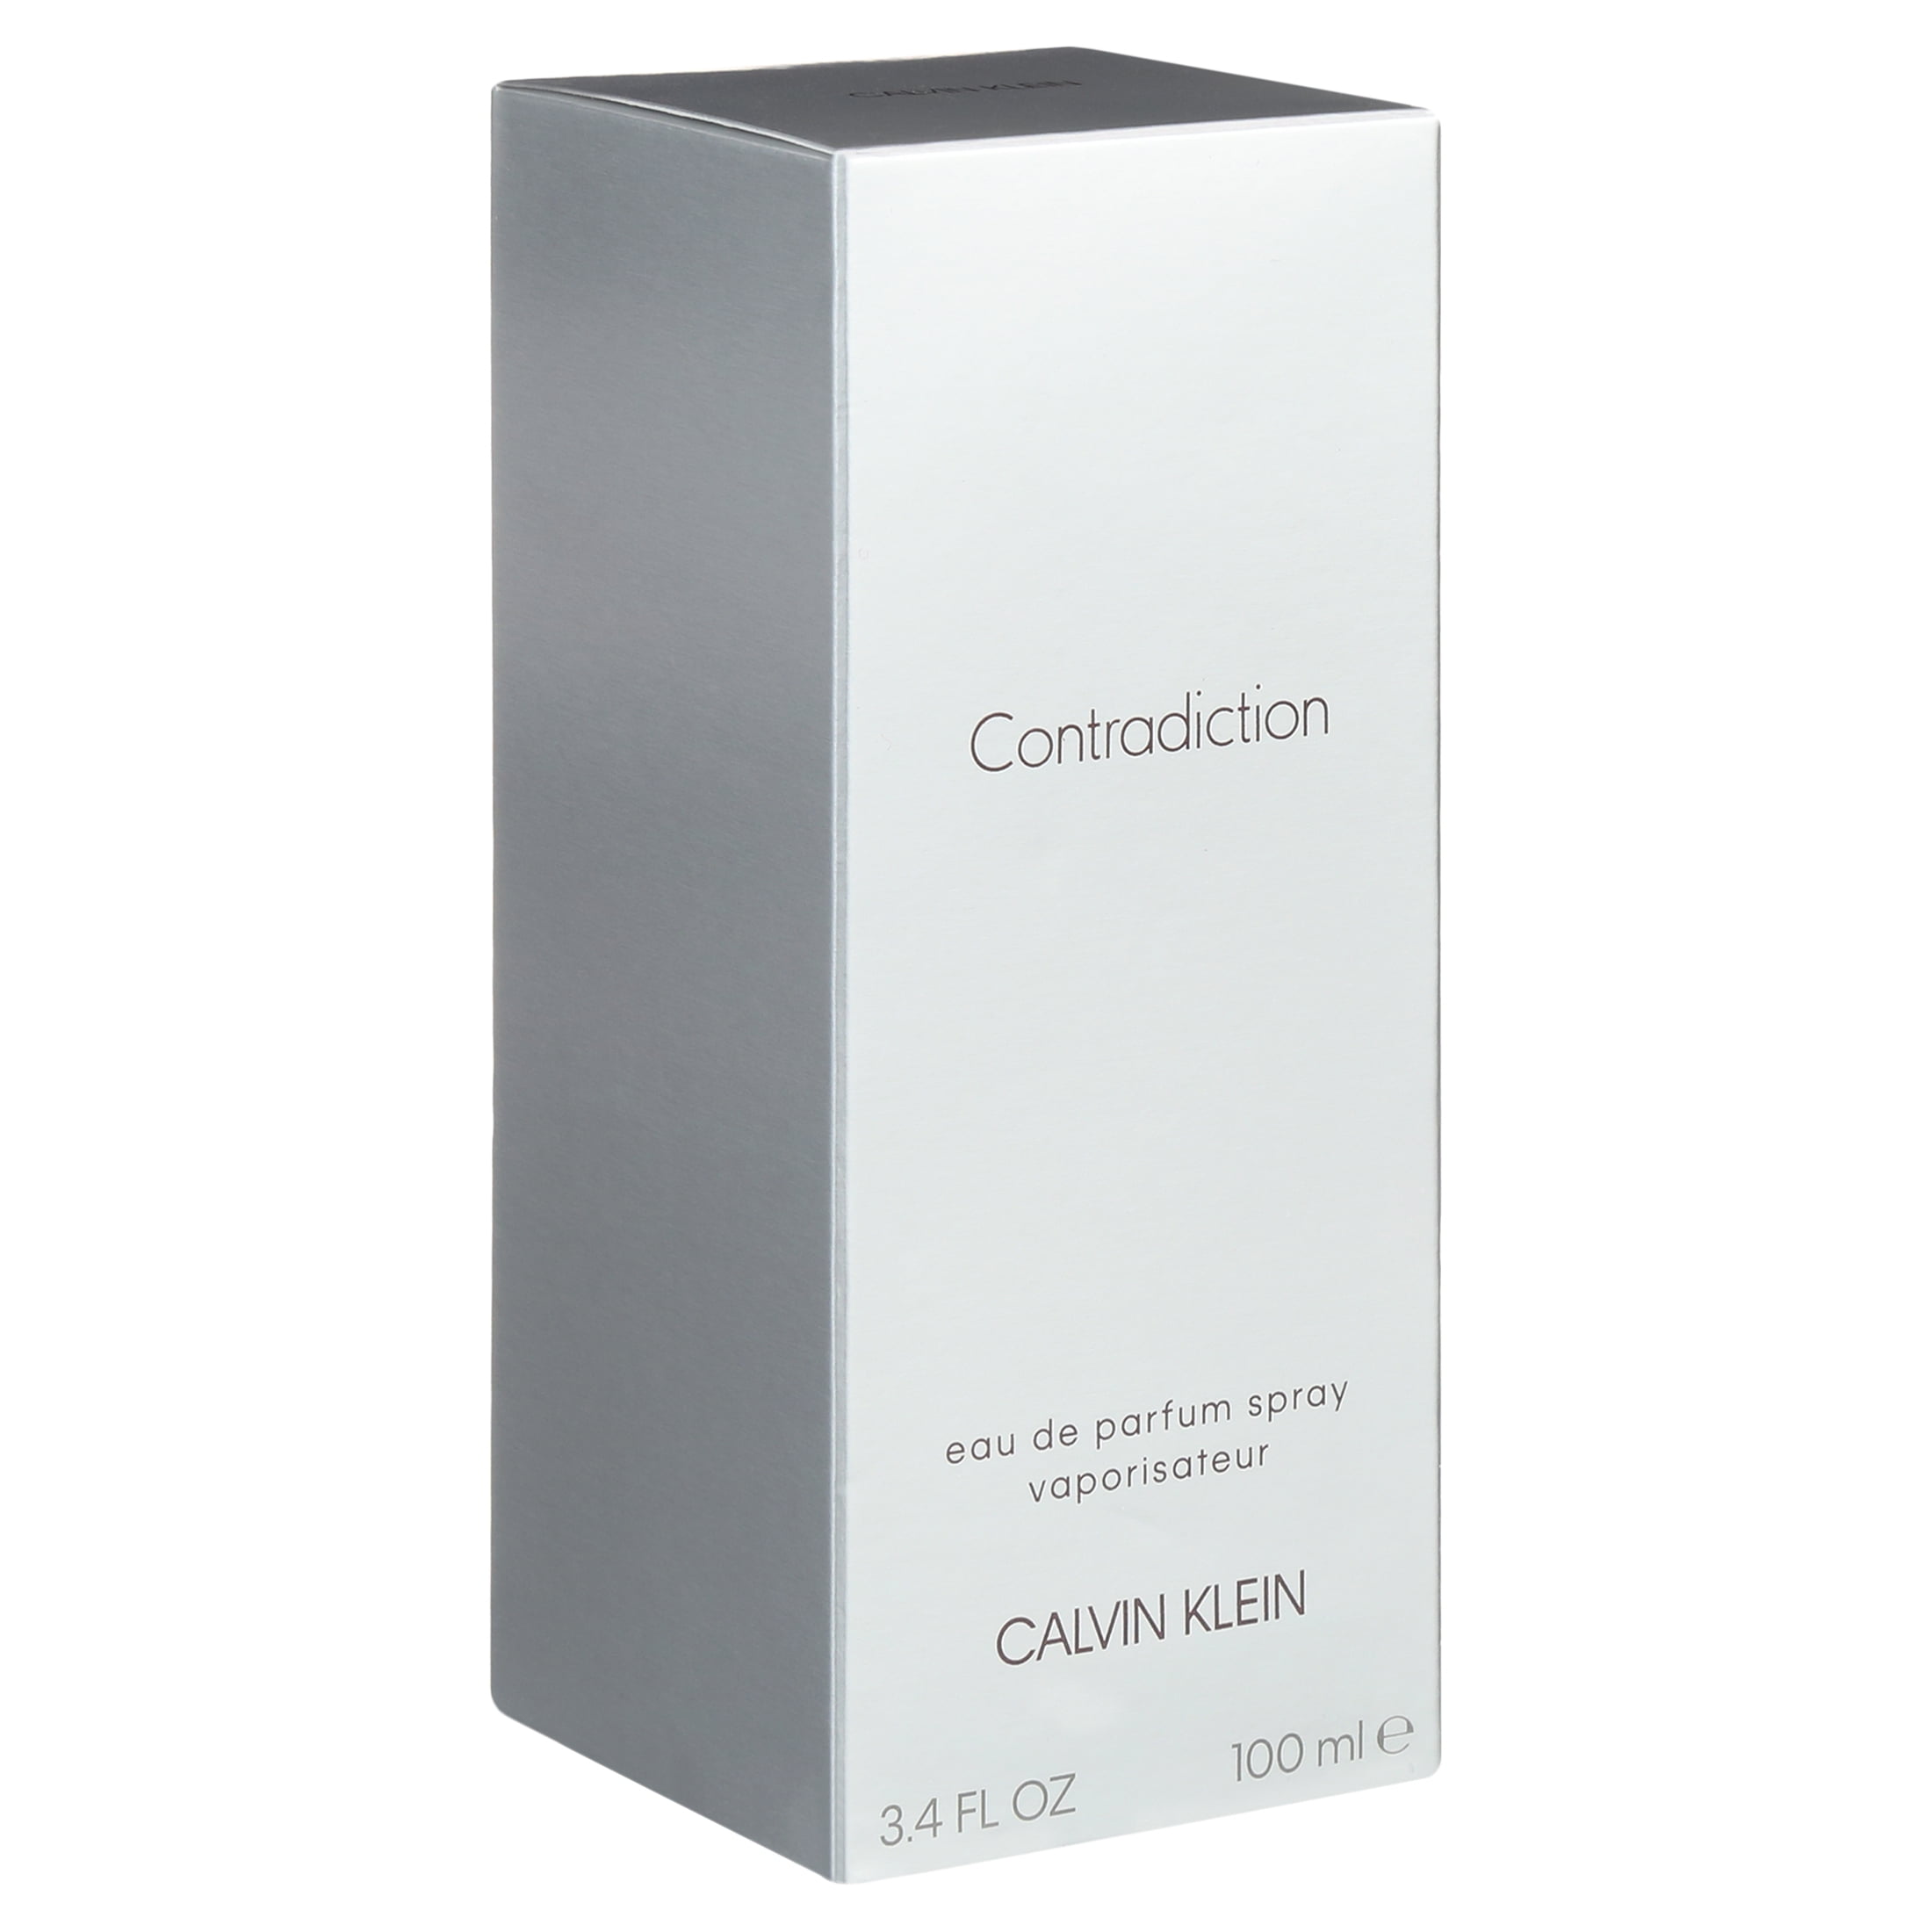 Contradiction by Calvin Klein for Women  oz EDP Spray 